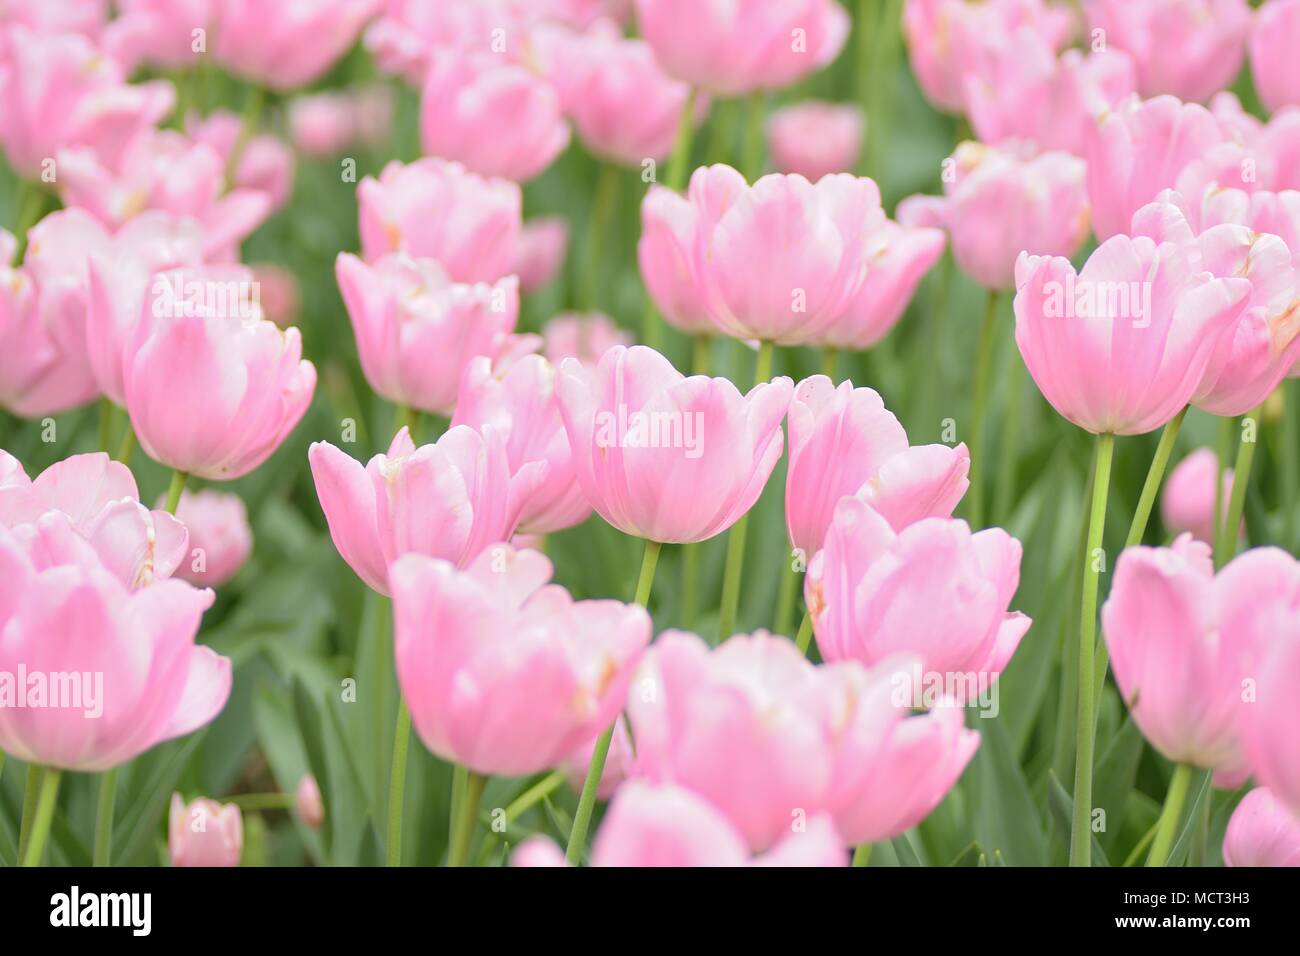 Macro background texture of Pink Tulip flowers in garden Stock Photo